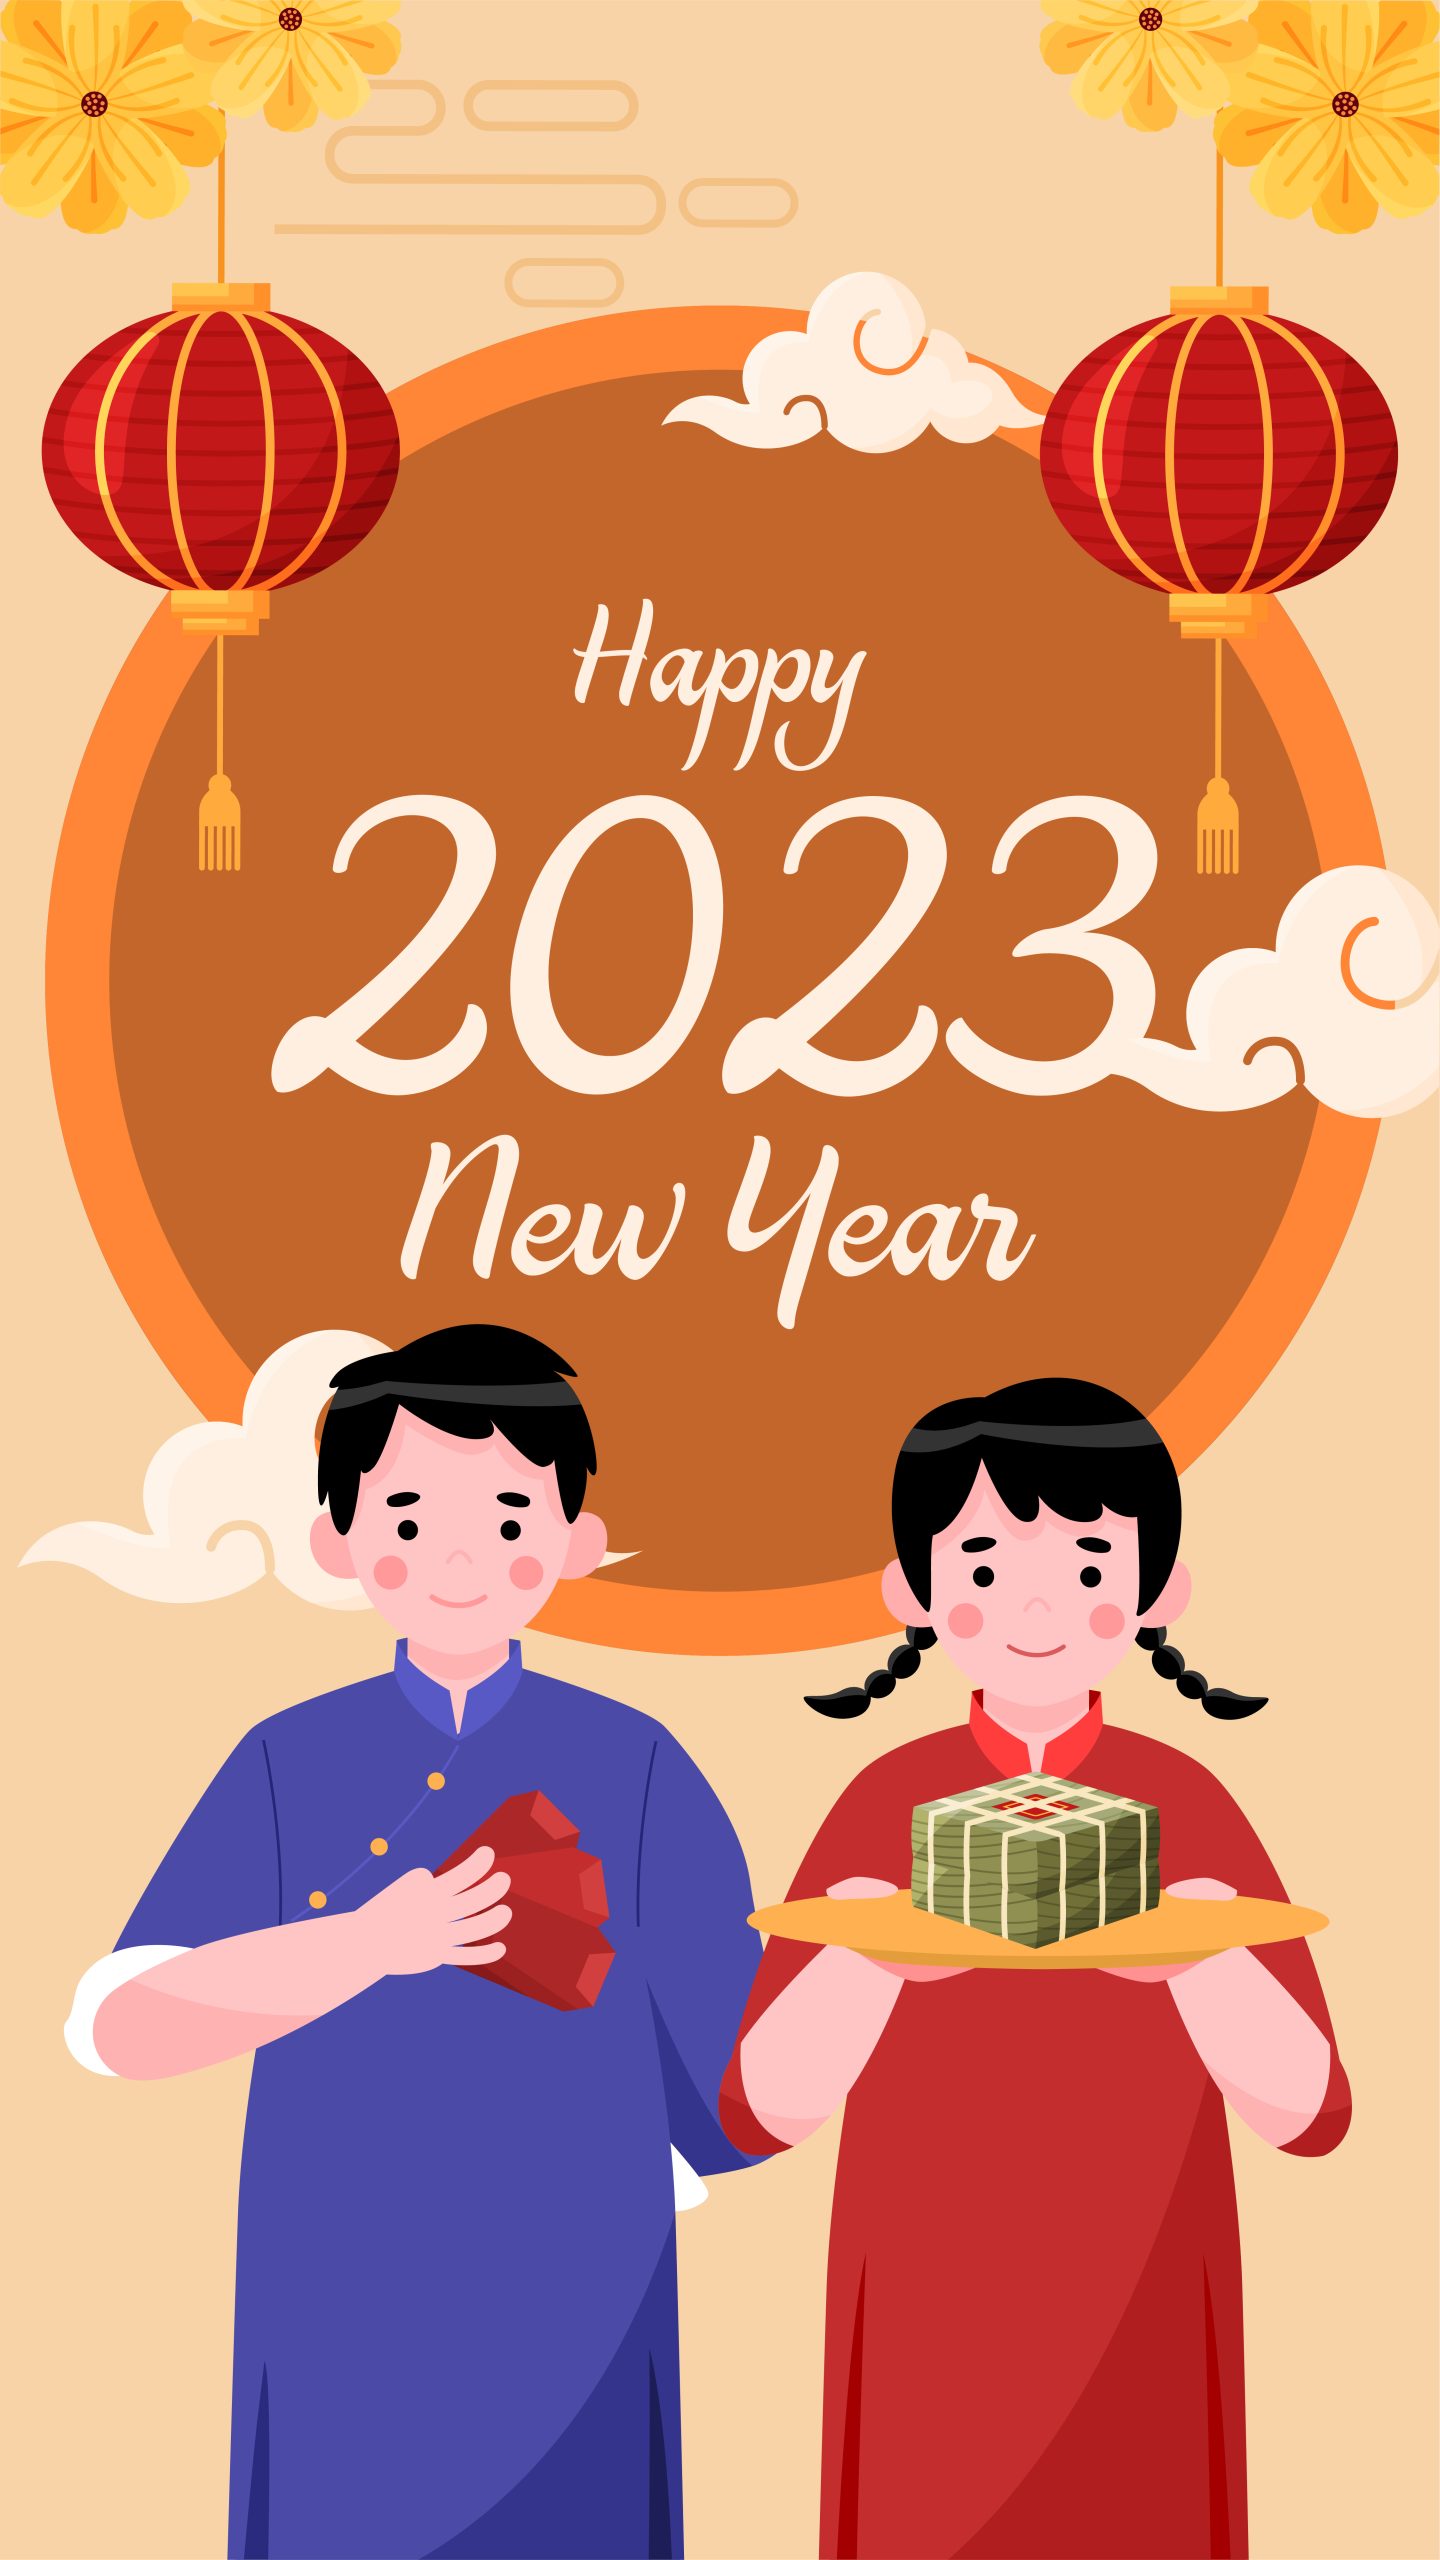 100 Hình Ảnh Chúc Mừng Năm Mới 2023 Đẹp Mới Nhất - Thế Giới Táo Khuyết